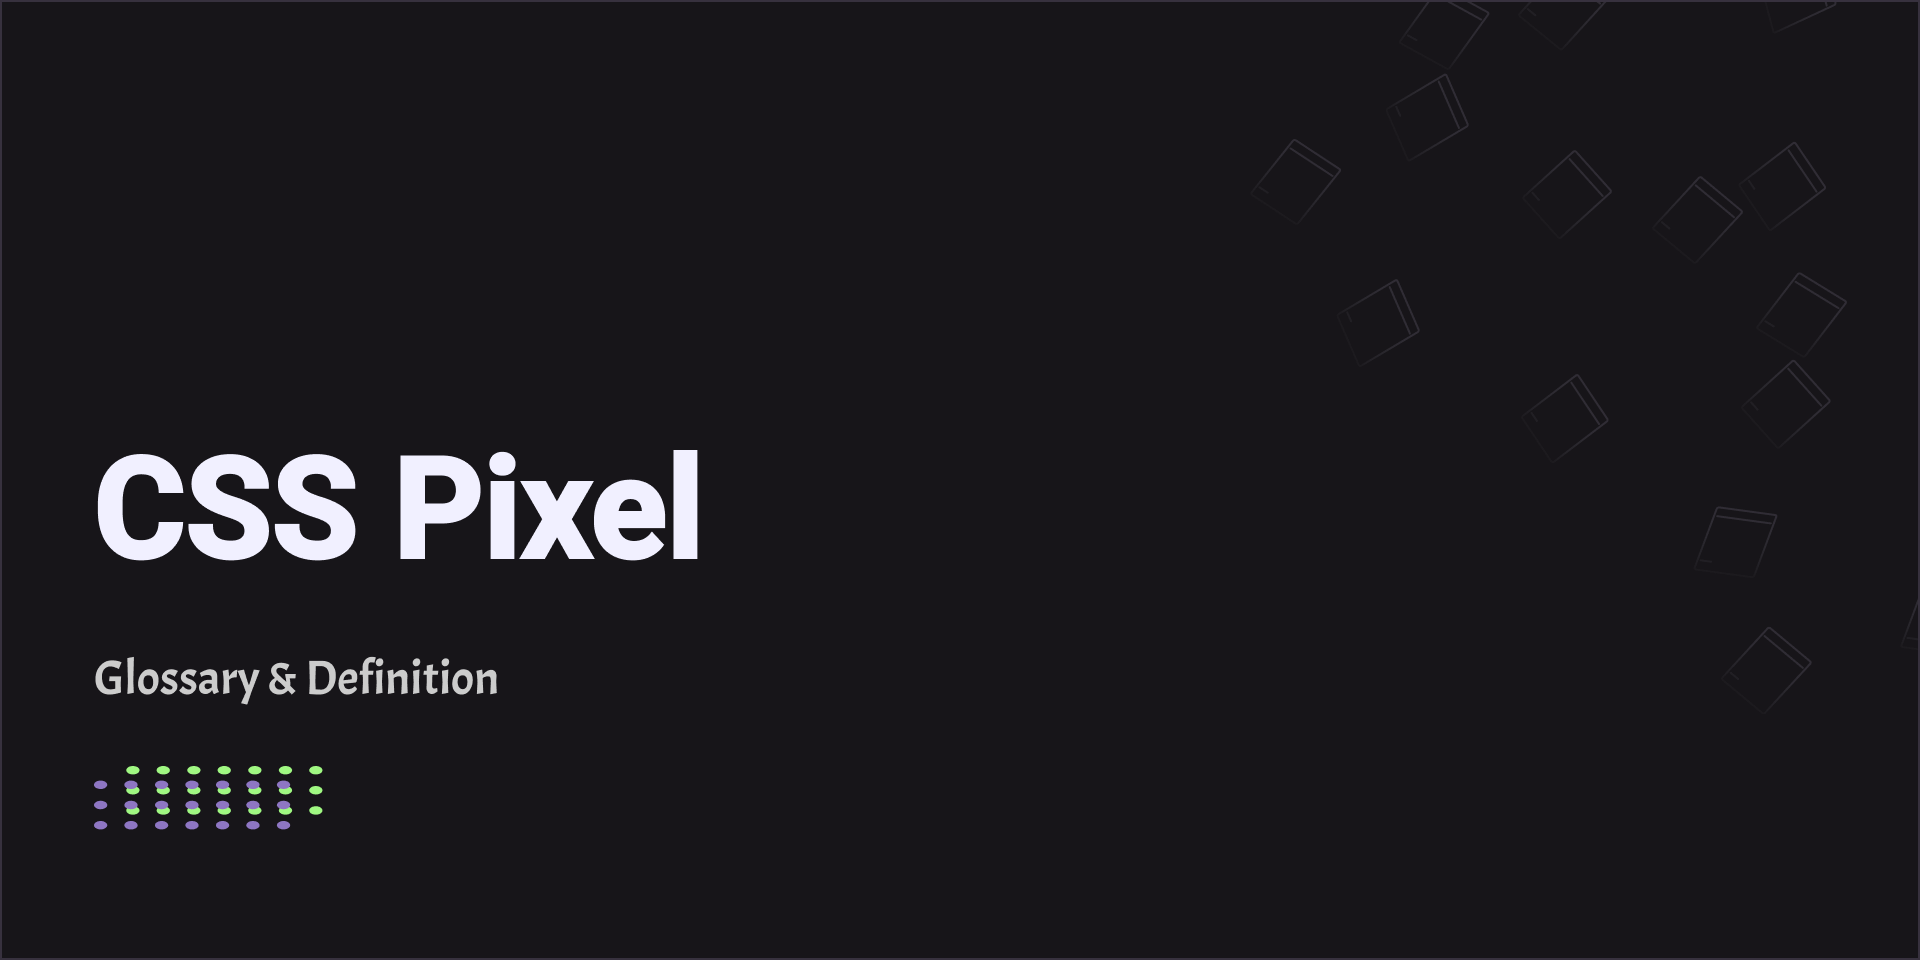 CSS Pixel